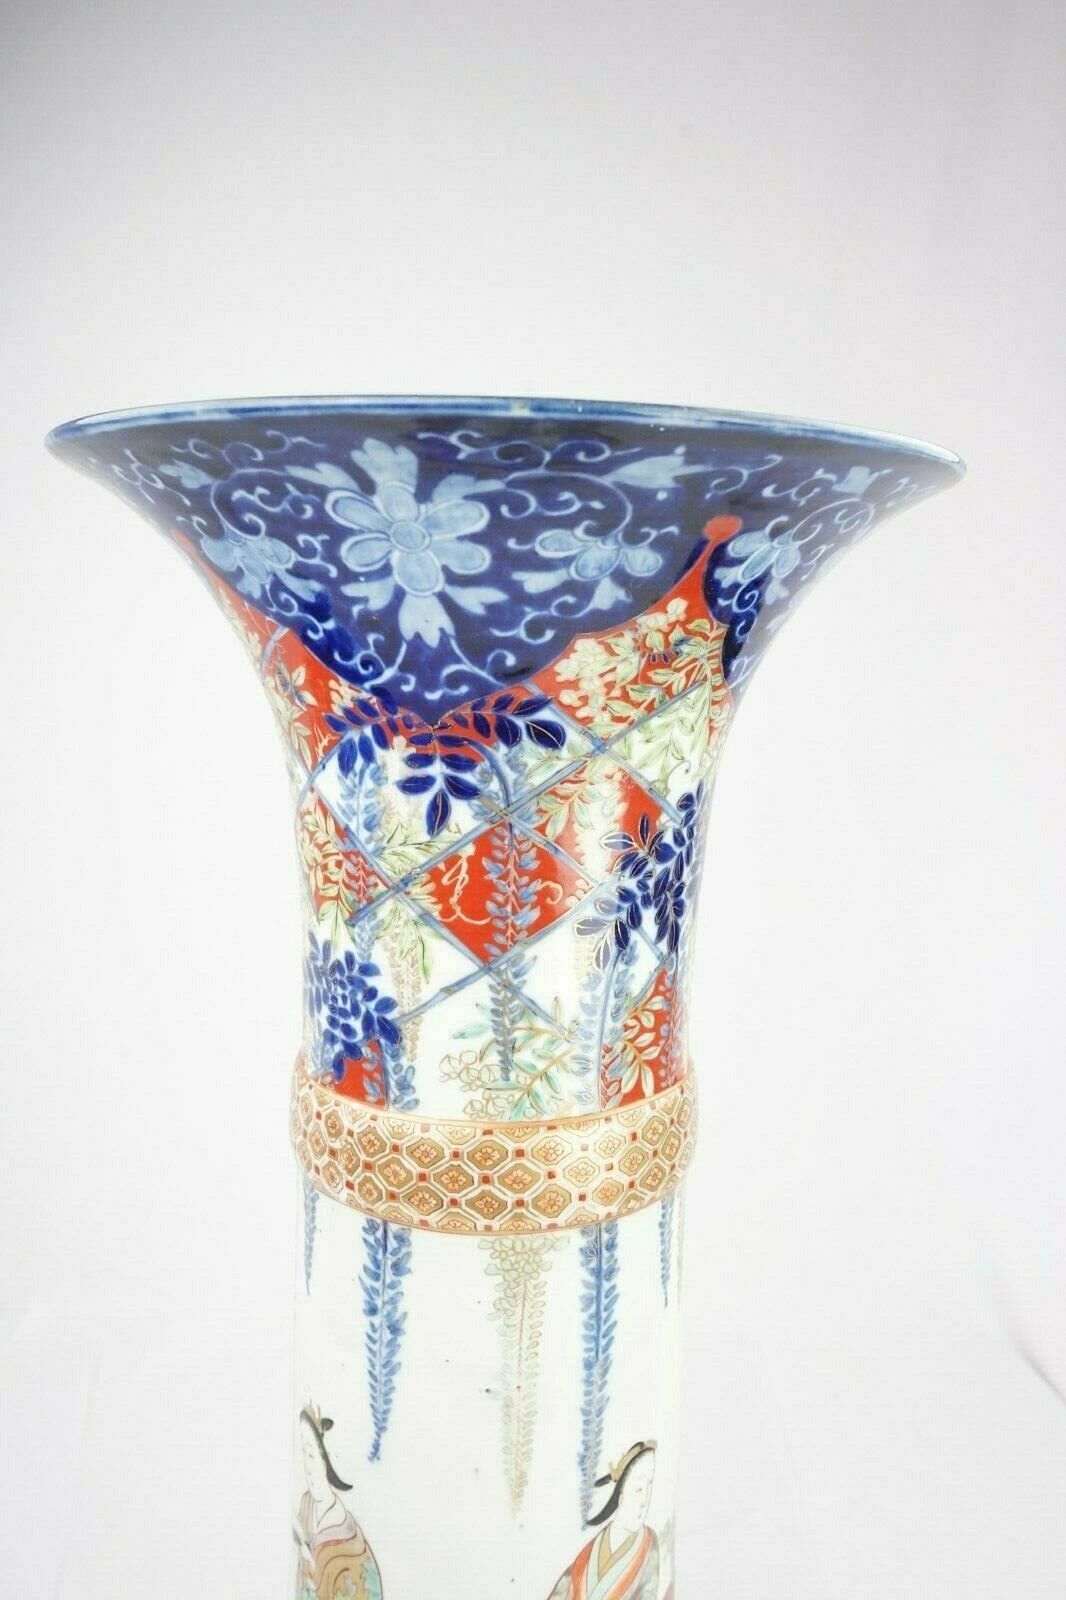 Japanese Meiji 19C Imari Porcelain Vase 21.25 Inches Ladies and Wisteria